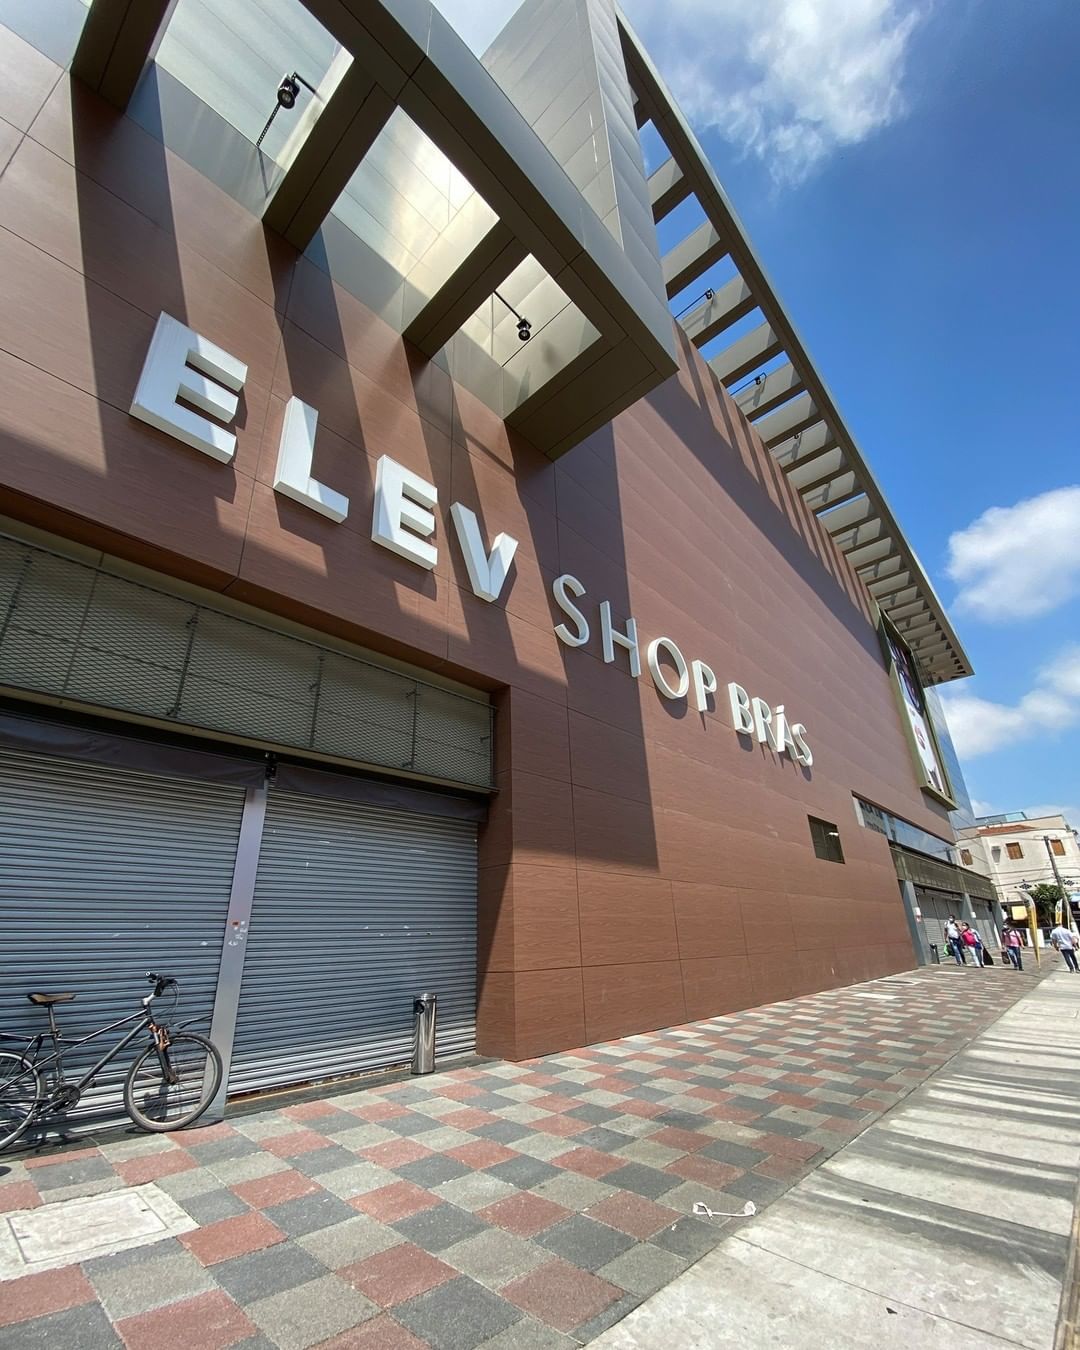 Shop Elev Brás: um ótimo destino para revendedoras